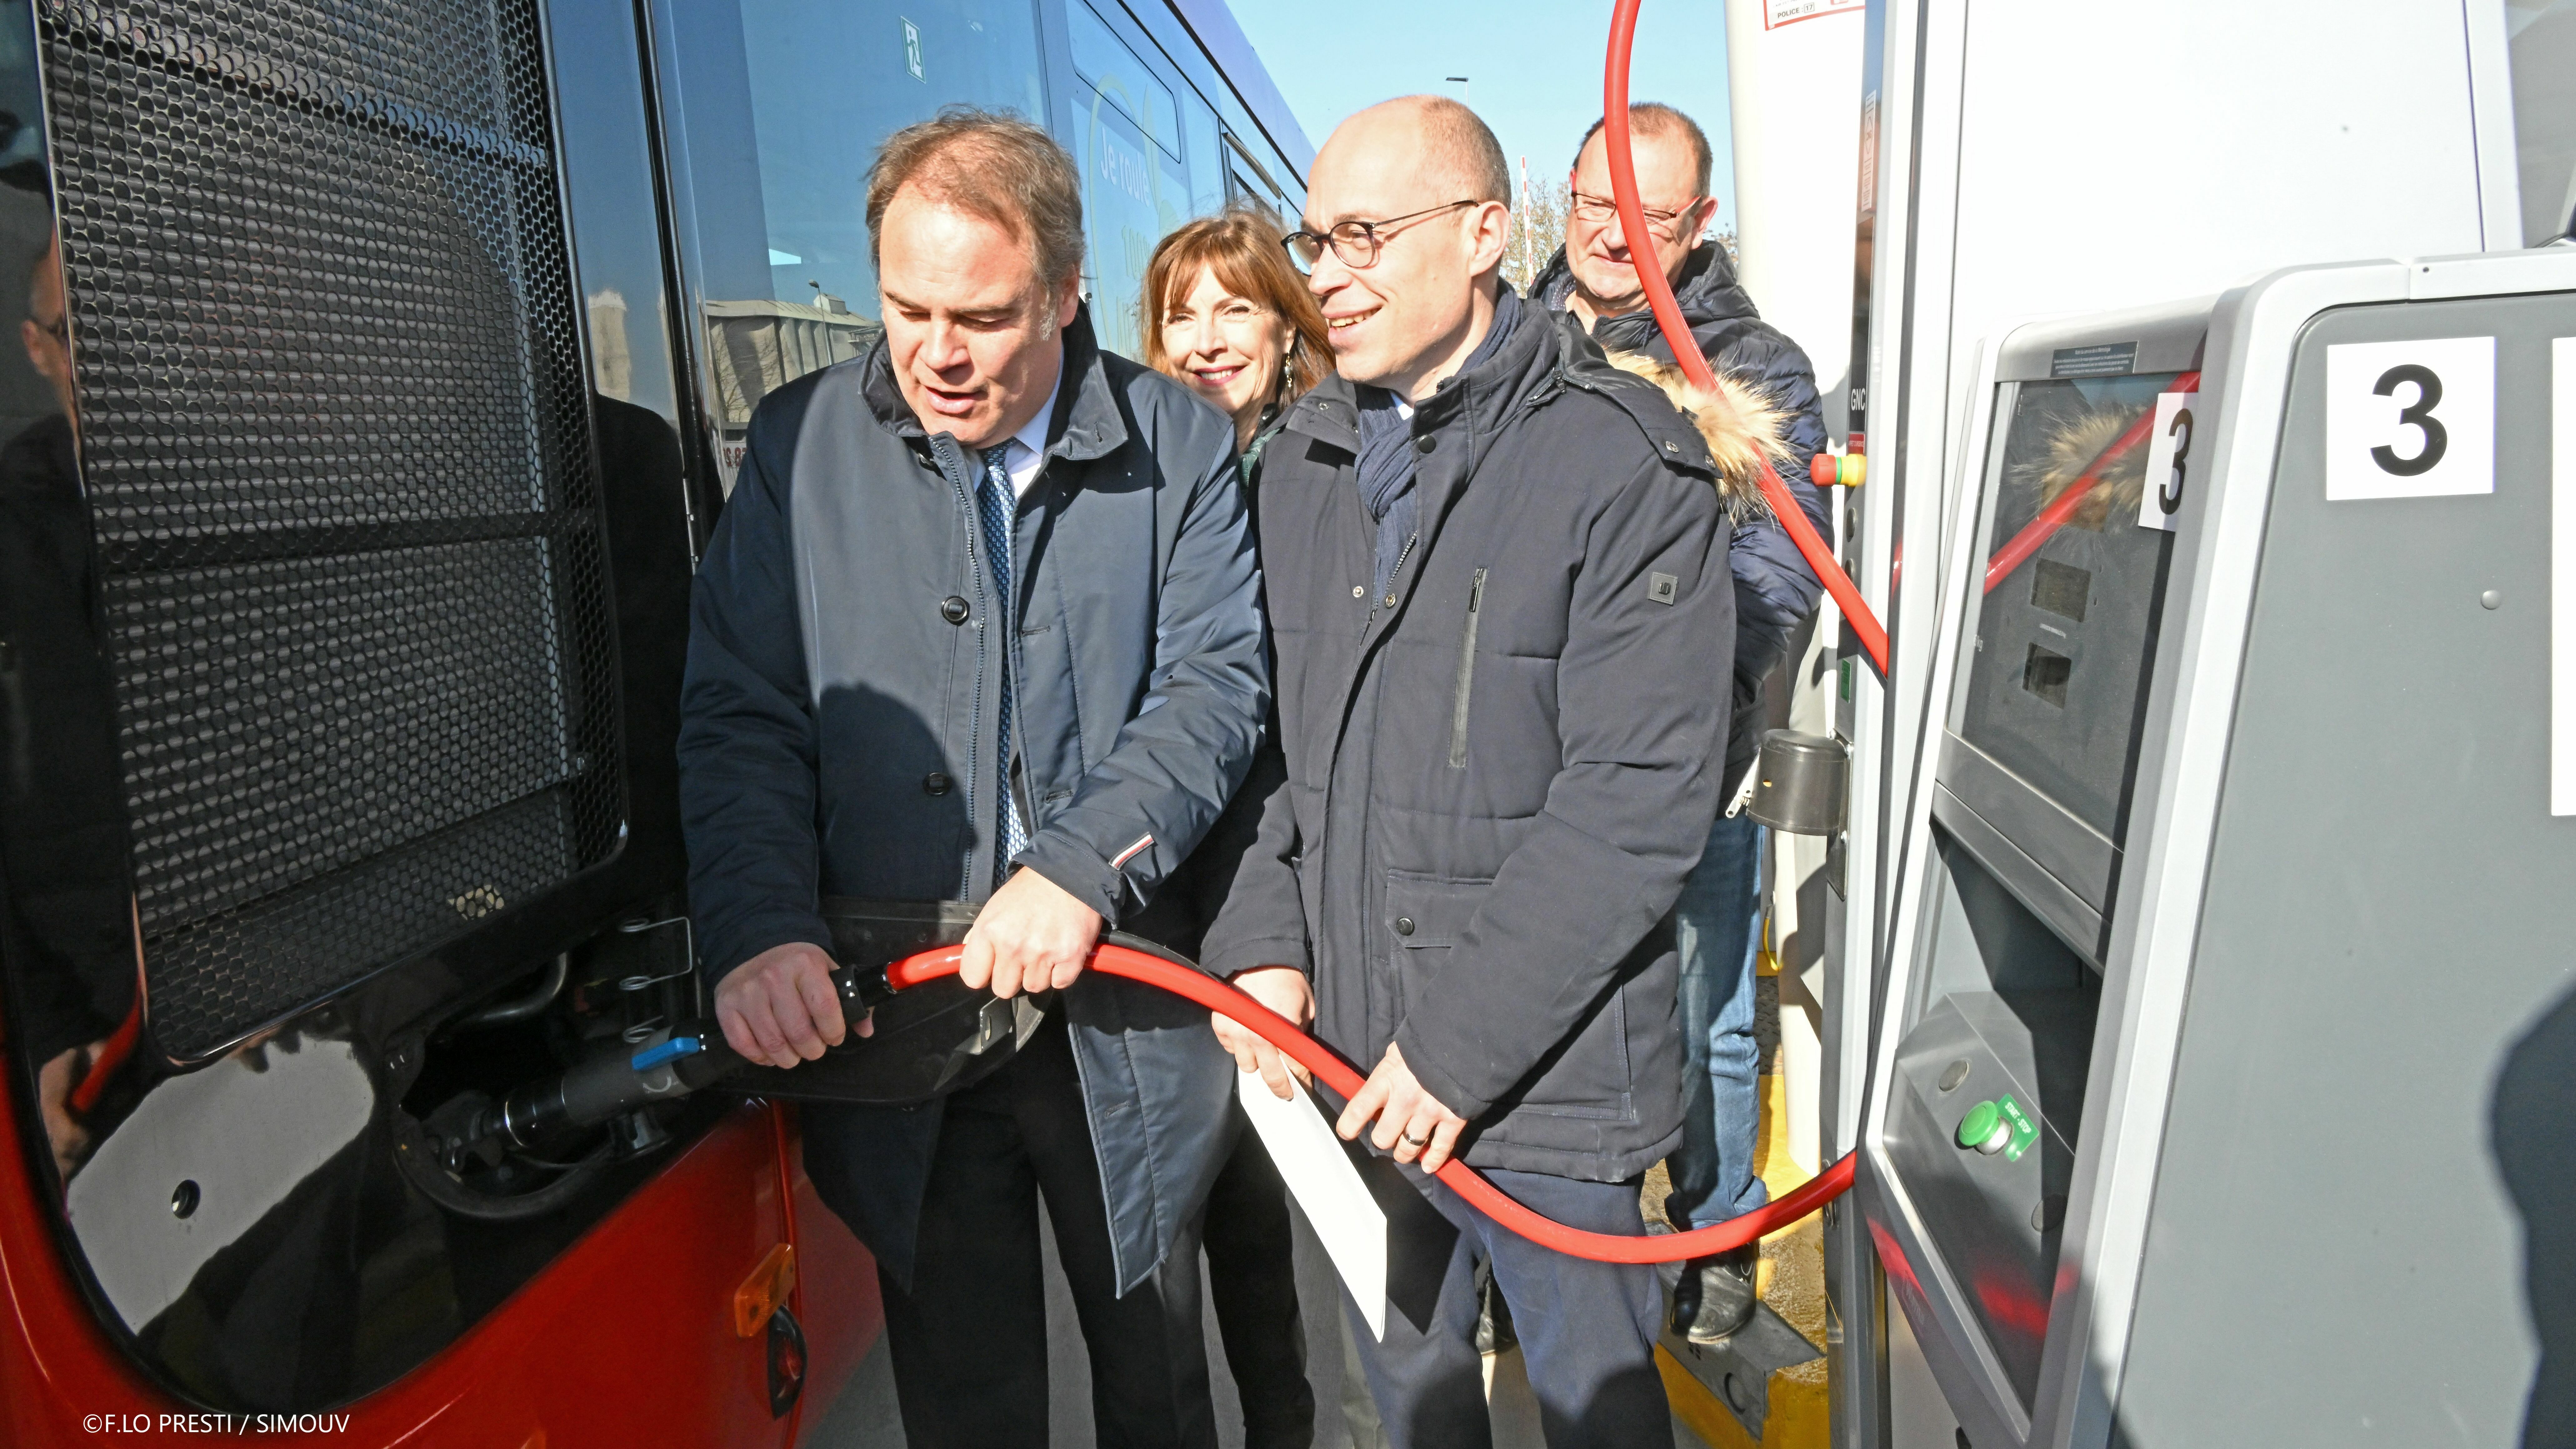 Chargement d'un bus gaz par les deux Présidents de Communauté d'Agglomération